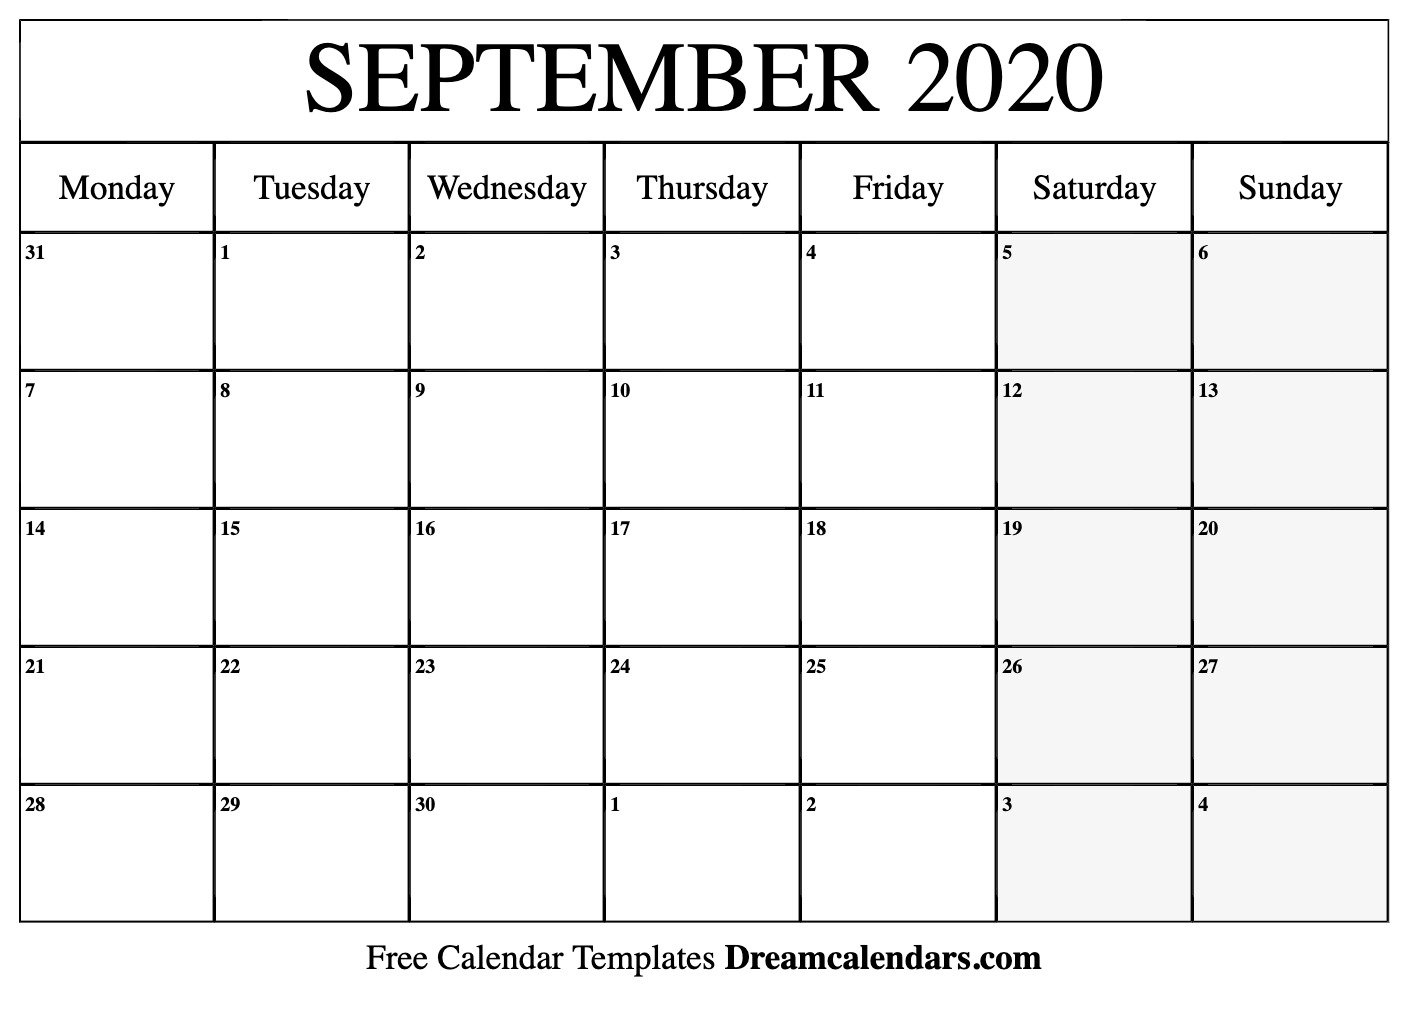  September 2020 Printable Calendar Dream Calendars 1406x1020